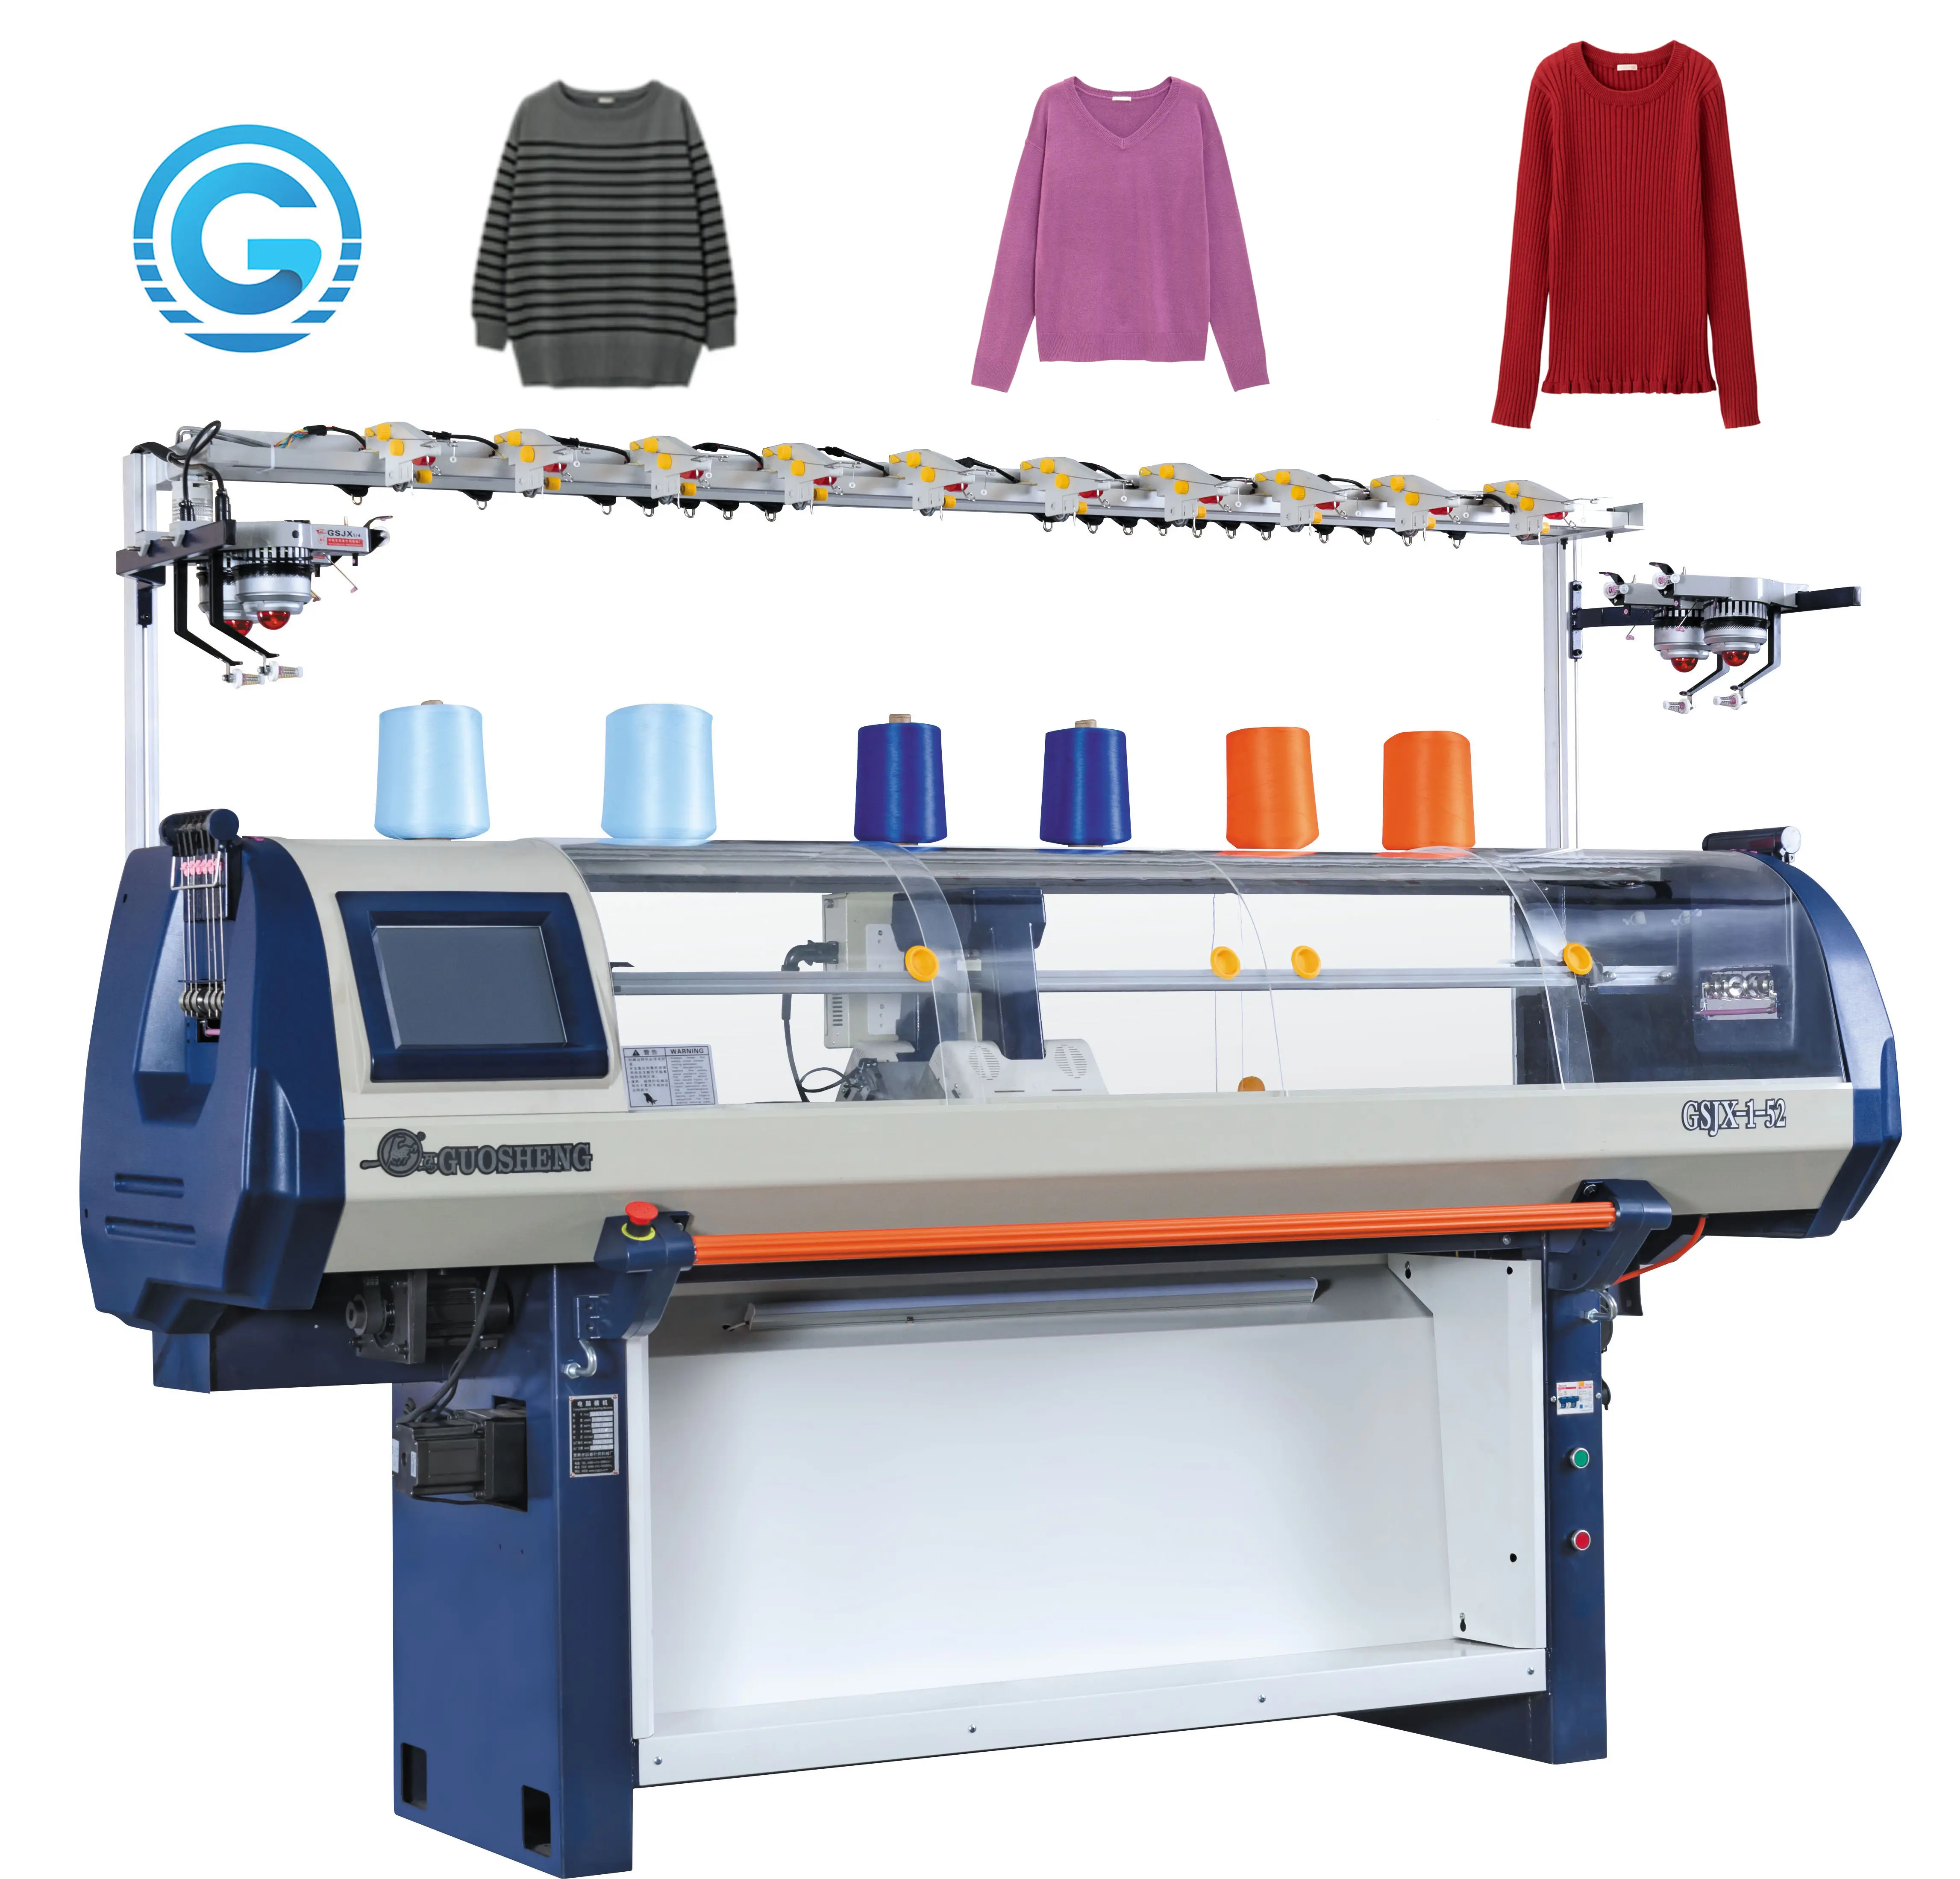 Mesin Pembuat Sweater Terkomputerisasi, Mesin Rajutan Otomatis Sepenuhnya Tekstil Rumah Tipe Rajut Datar